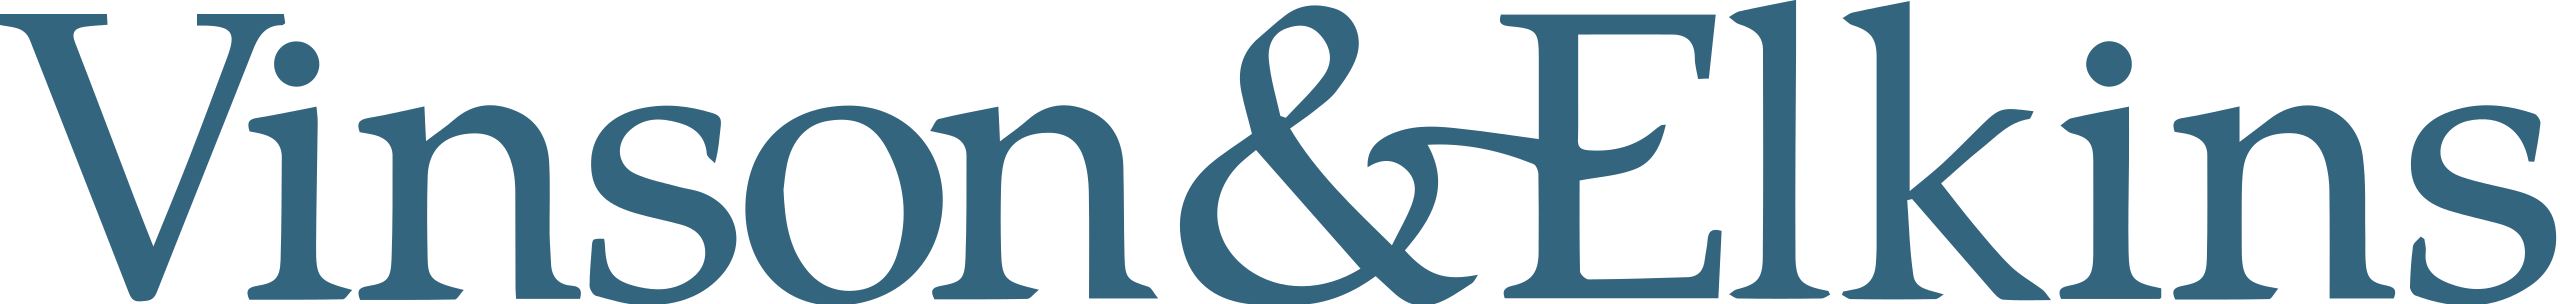 vinson & elkins llp logo.svg (2) (1)